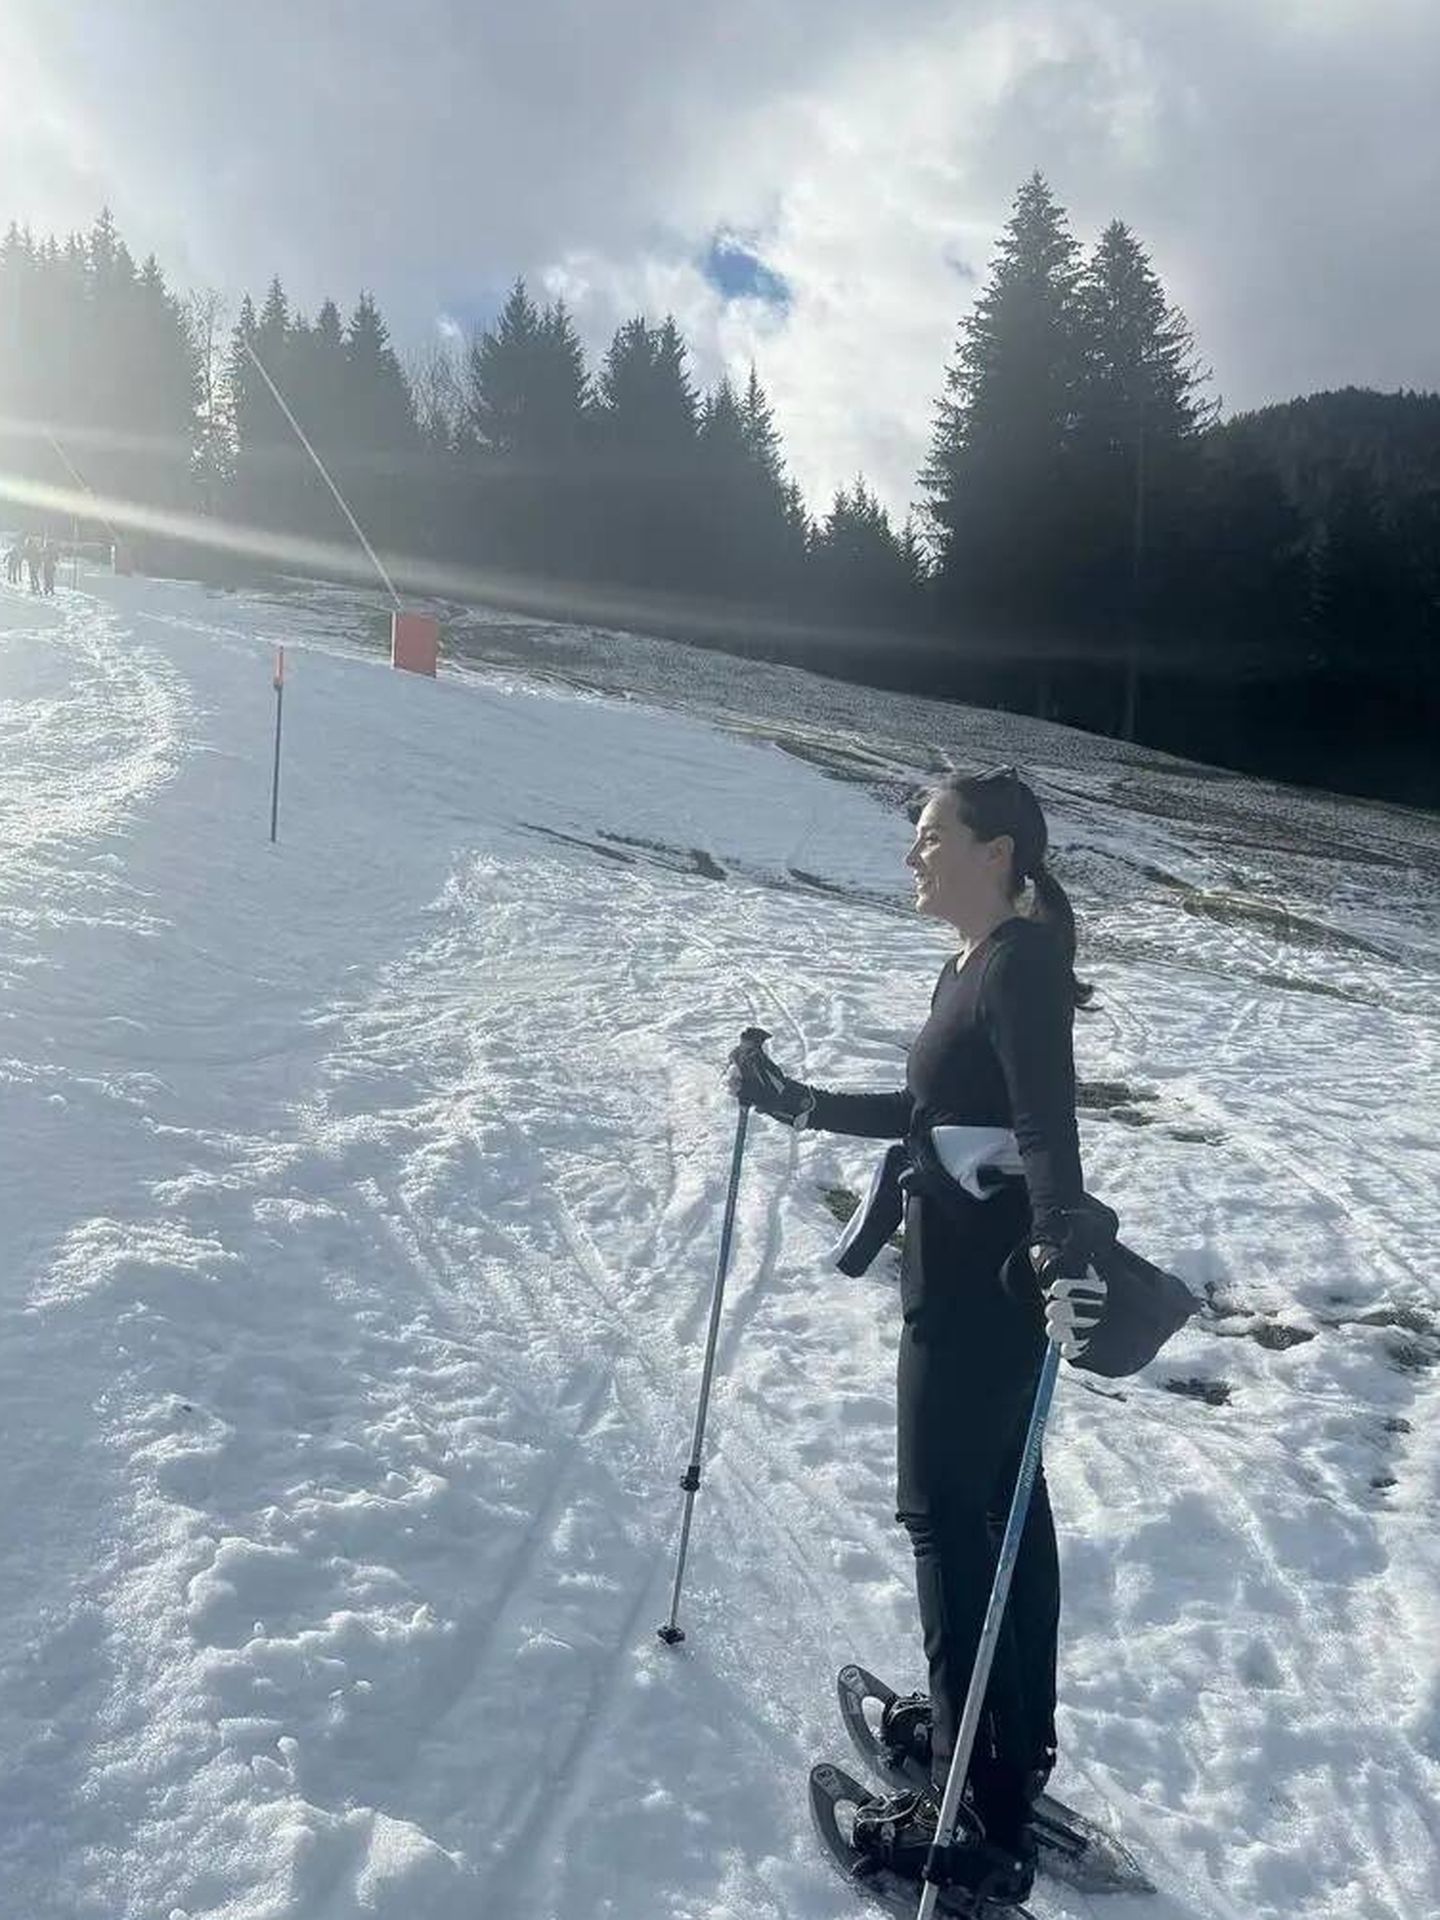 Tamara, en la nieve de Gstaad. (Instagram)